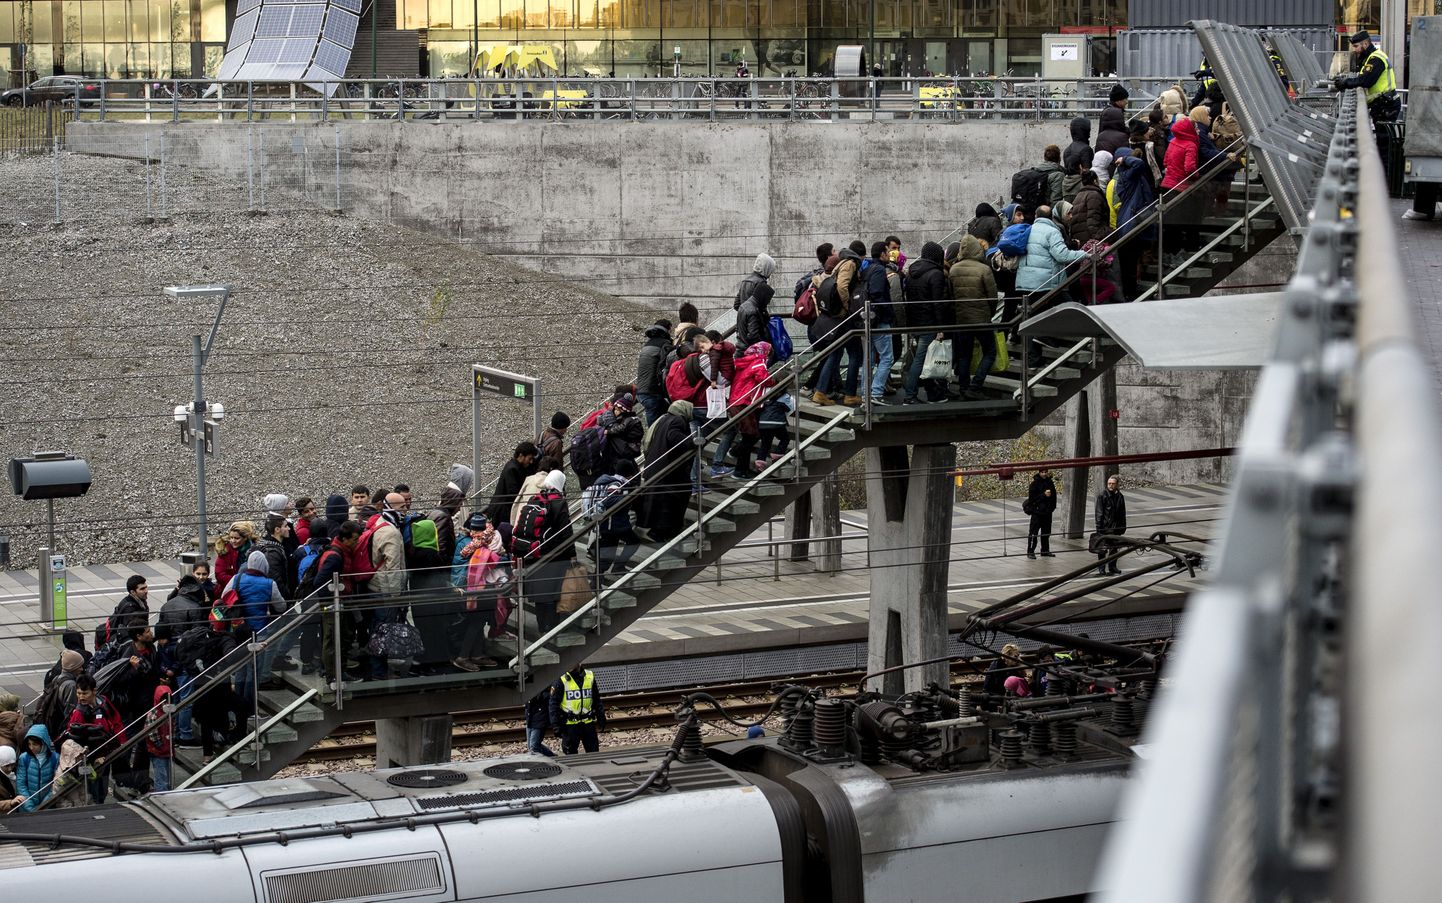 Veel mullu novembris saabus Taanist iga päev Malmö Hyllie raudteejaama suur hulk Euroopasse tulvanud põgenikke, mistõttu kehtestas Rootsi valitsus riikide vahel dokumentide kontrolli.